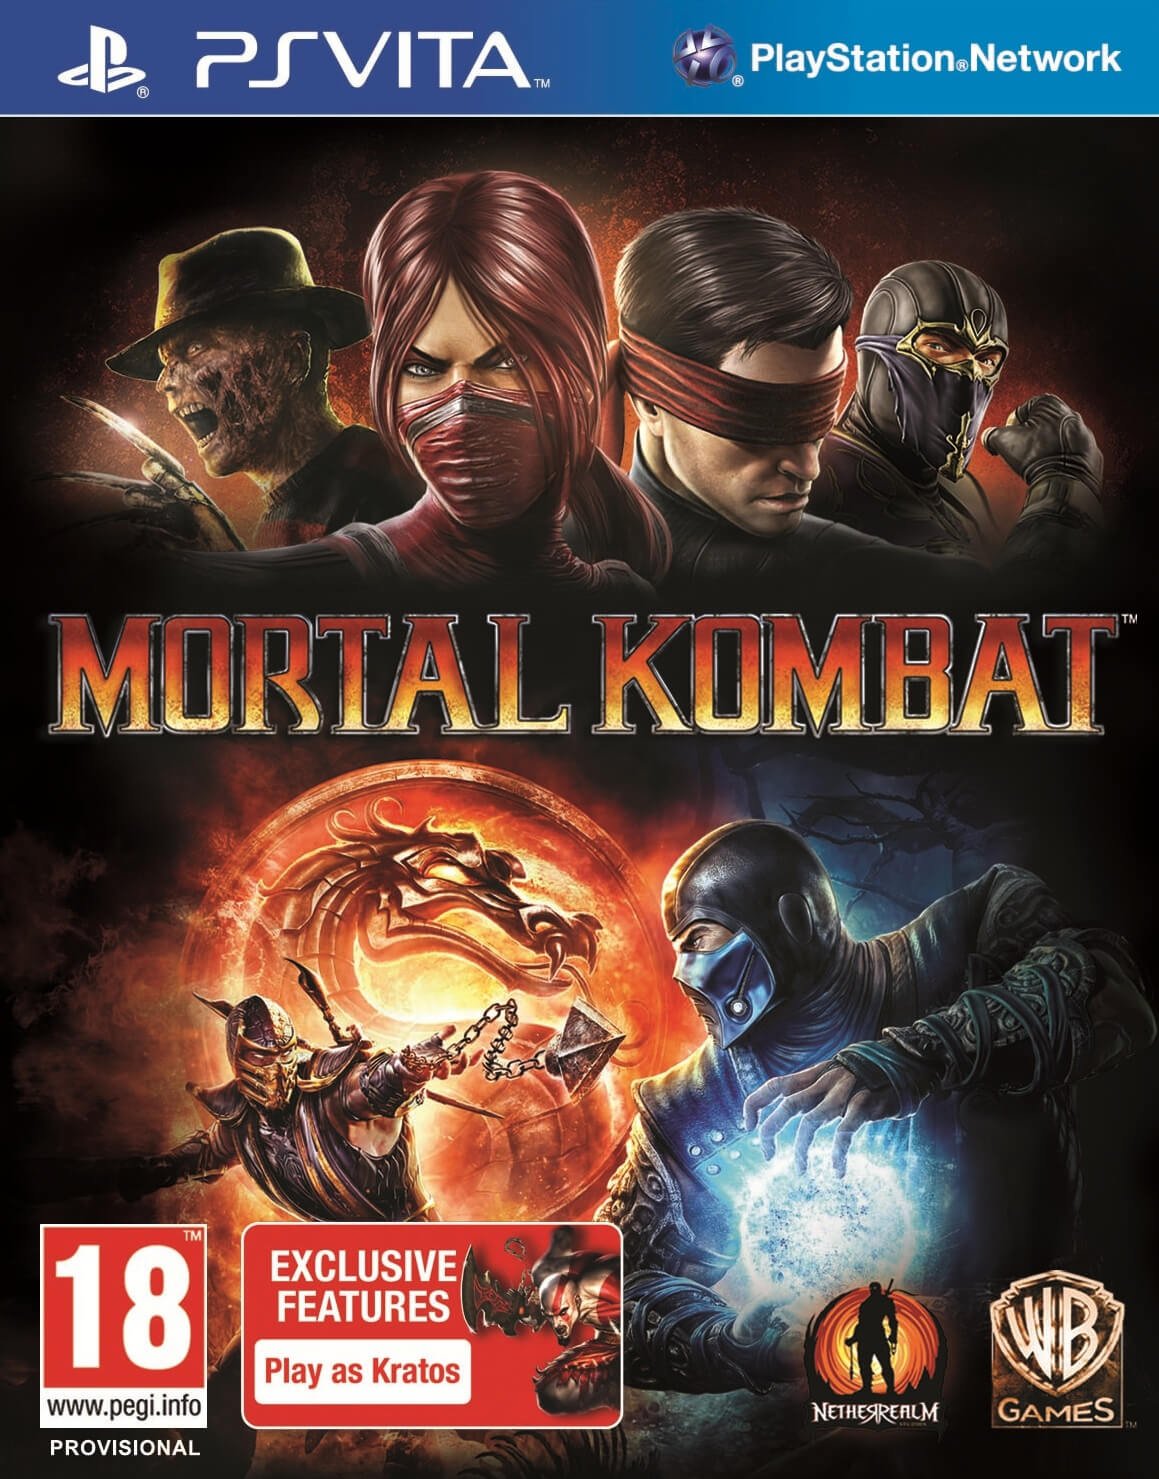 Mortal Kombat X Issue 9, Mortal Kombat Wiki